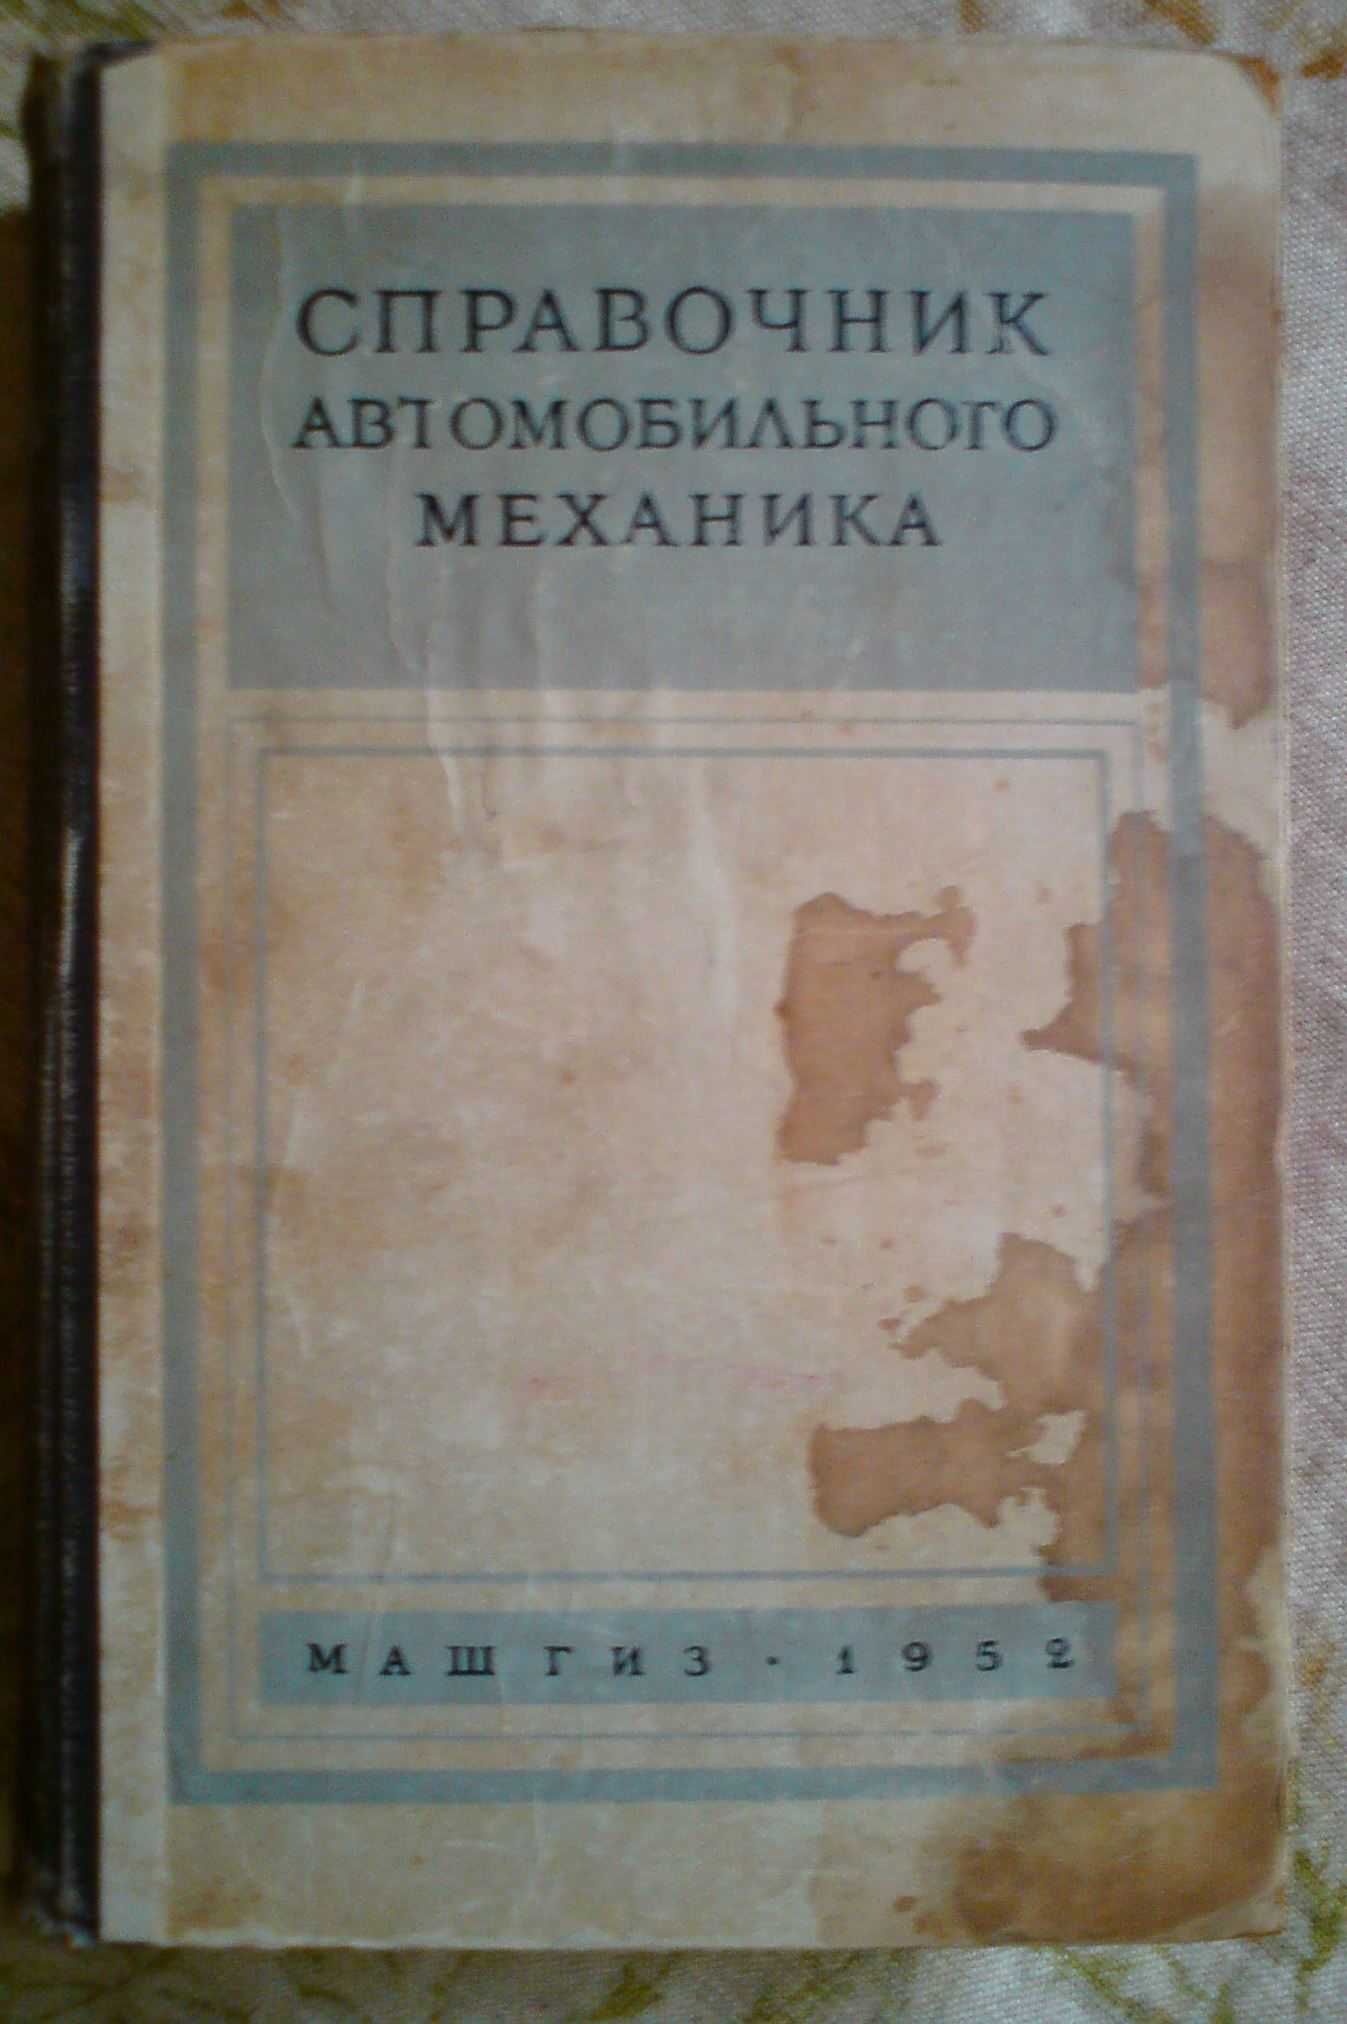 Справочник автомеханика 1952 г. издания